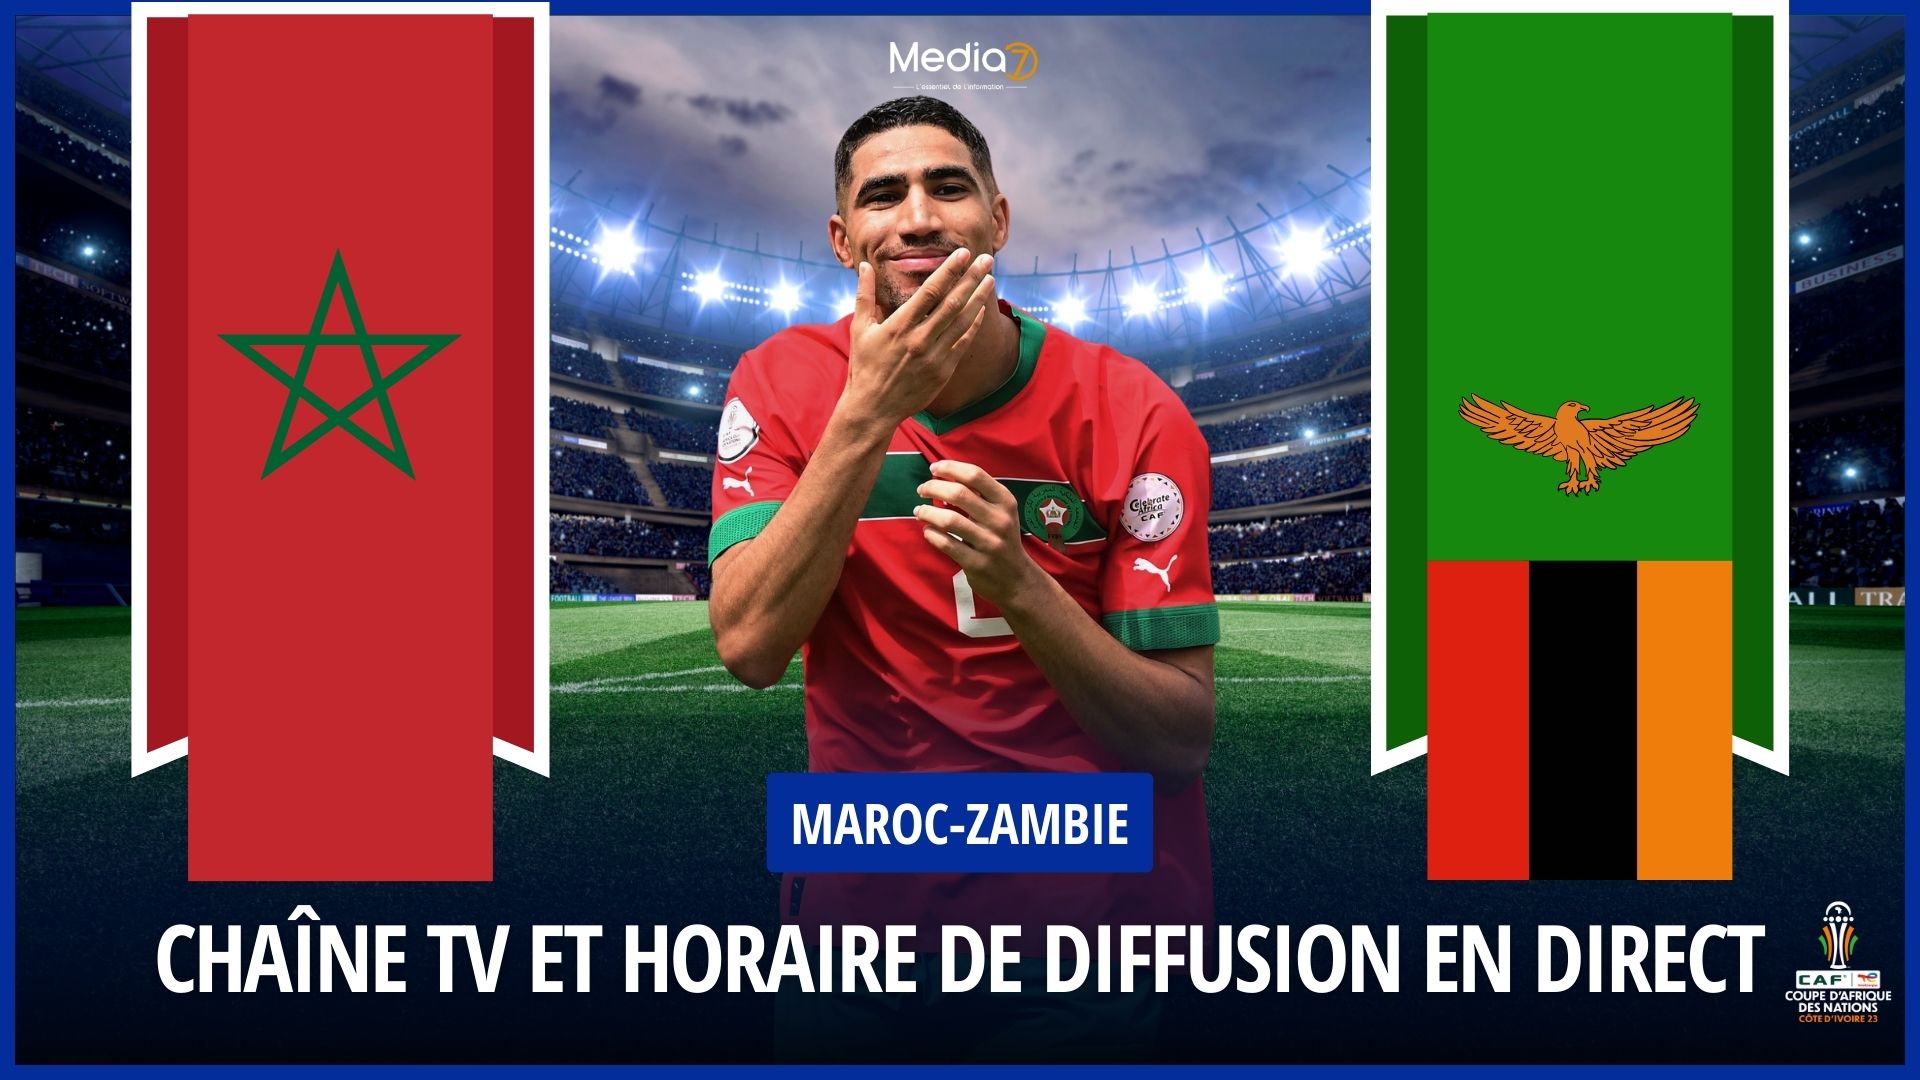 Maroc-Zambie heure chaine